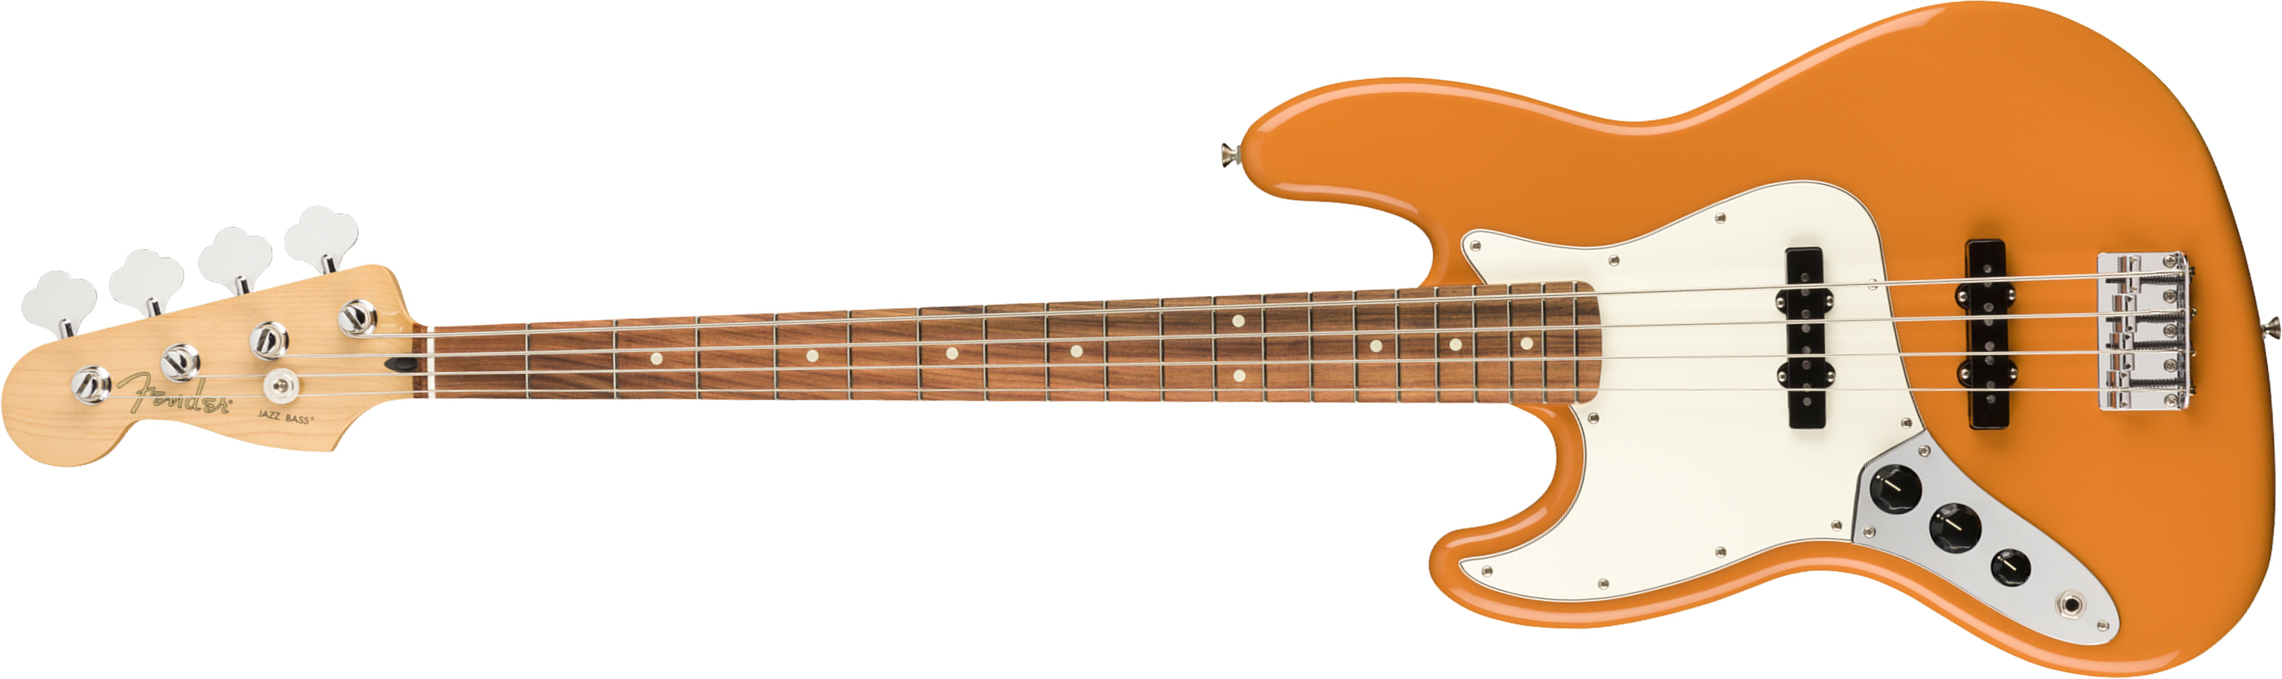 Fender Jazz Bass Player Lh Gaucher Mex Pf - Capri Orange - Basse Électrique Solid Body - Main picture